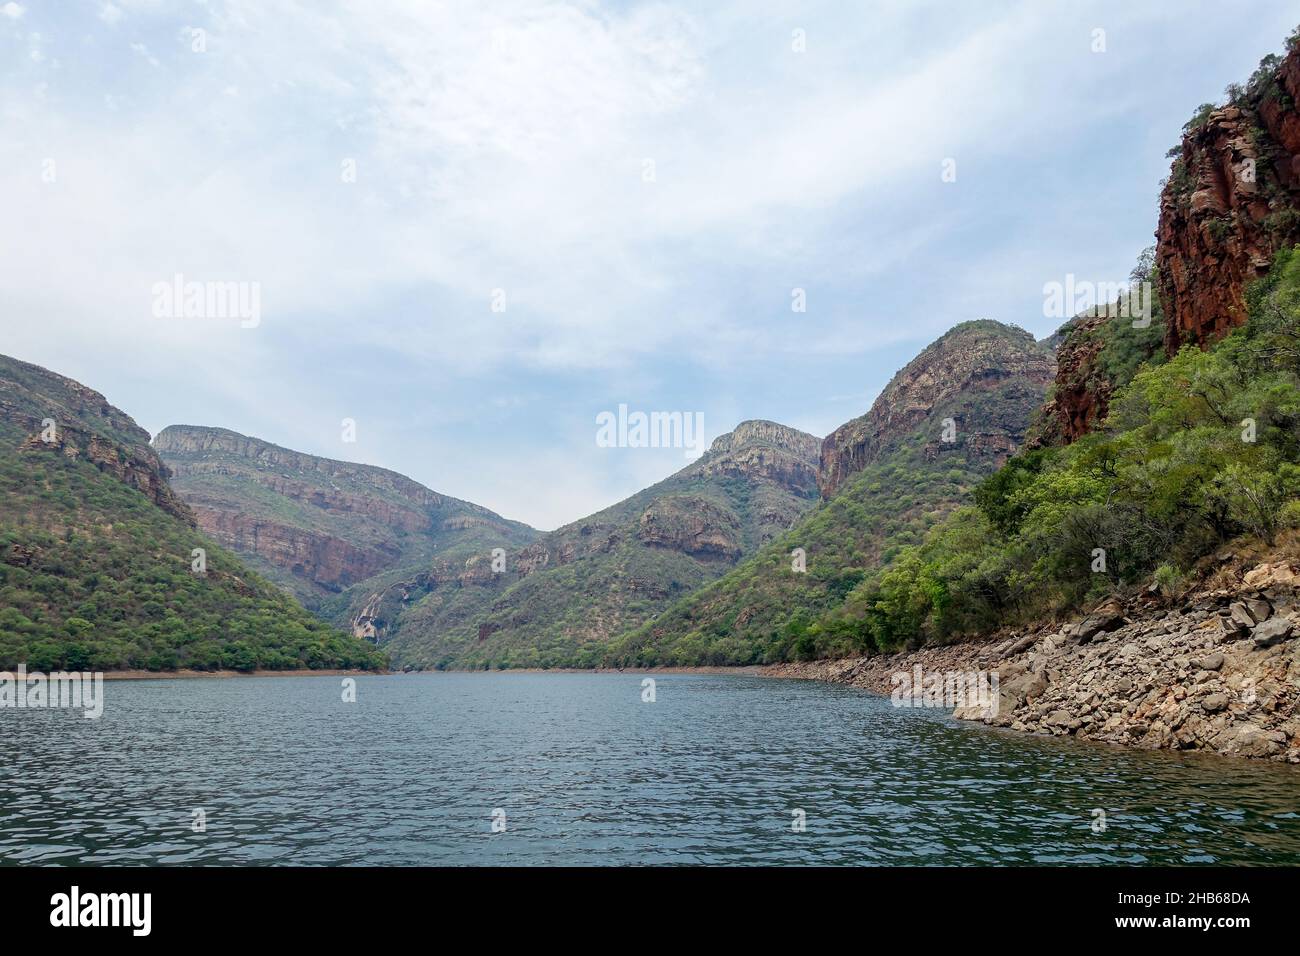 Vista panorámica del Cañón del Río Blyde, Mpumalanga, Sudáfrica Foto de stock